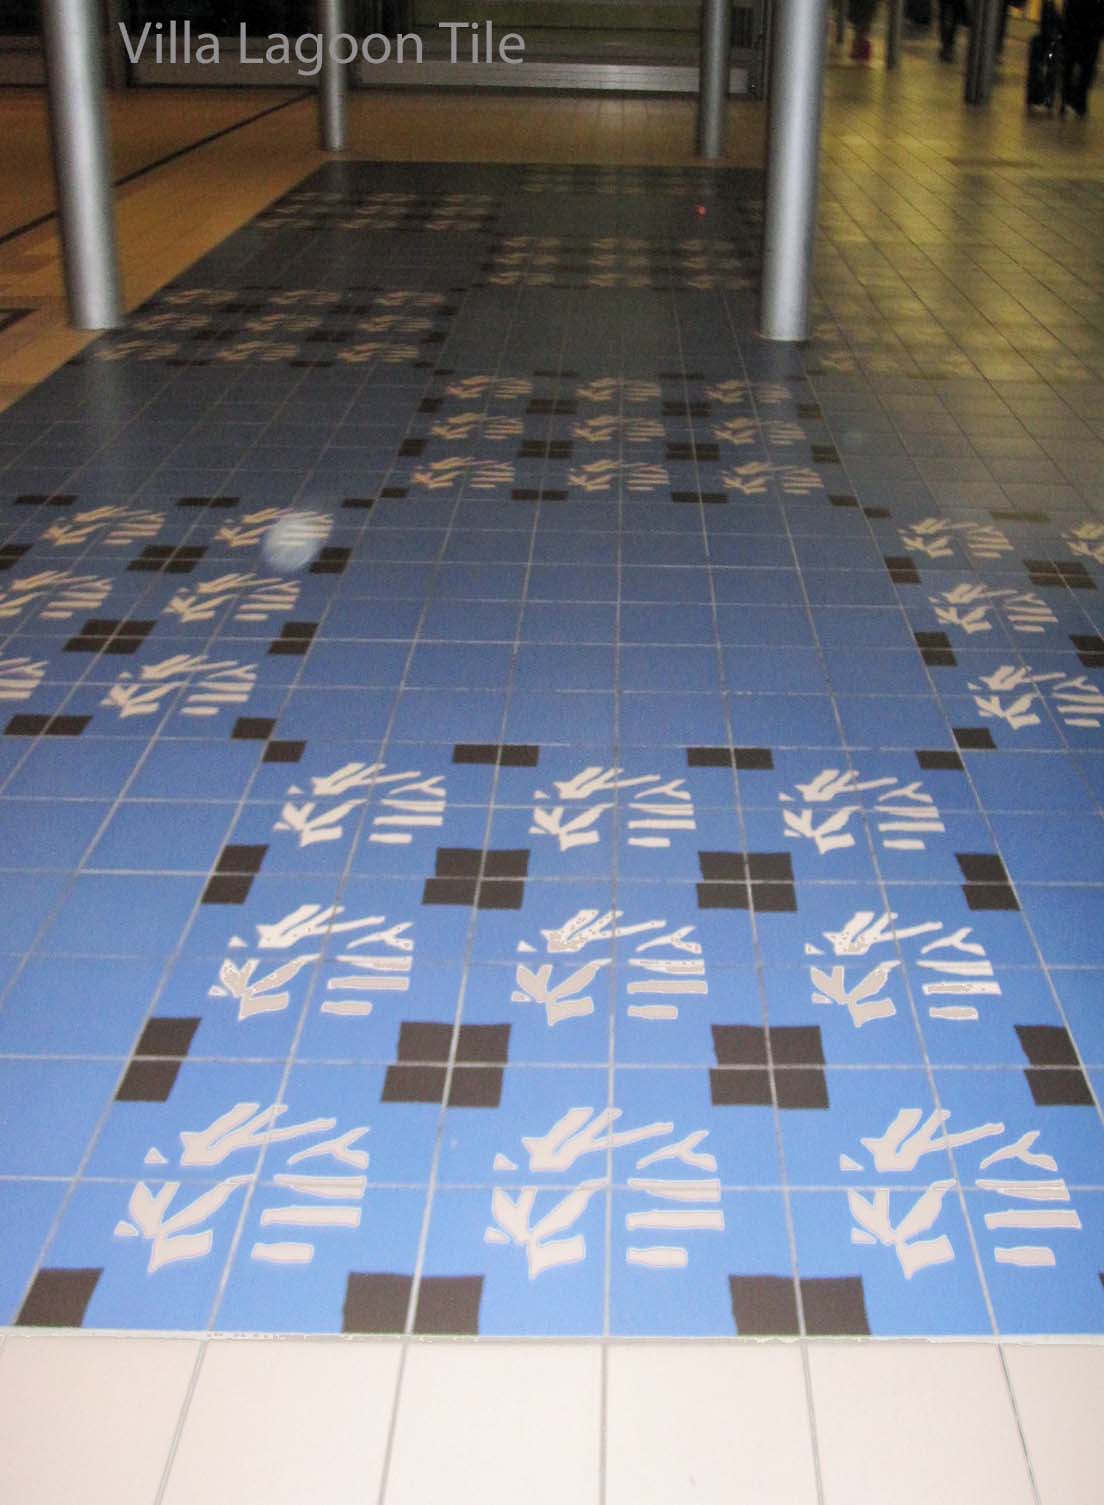 2012-airport-paris-cement-tile-floor-VLT